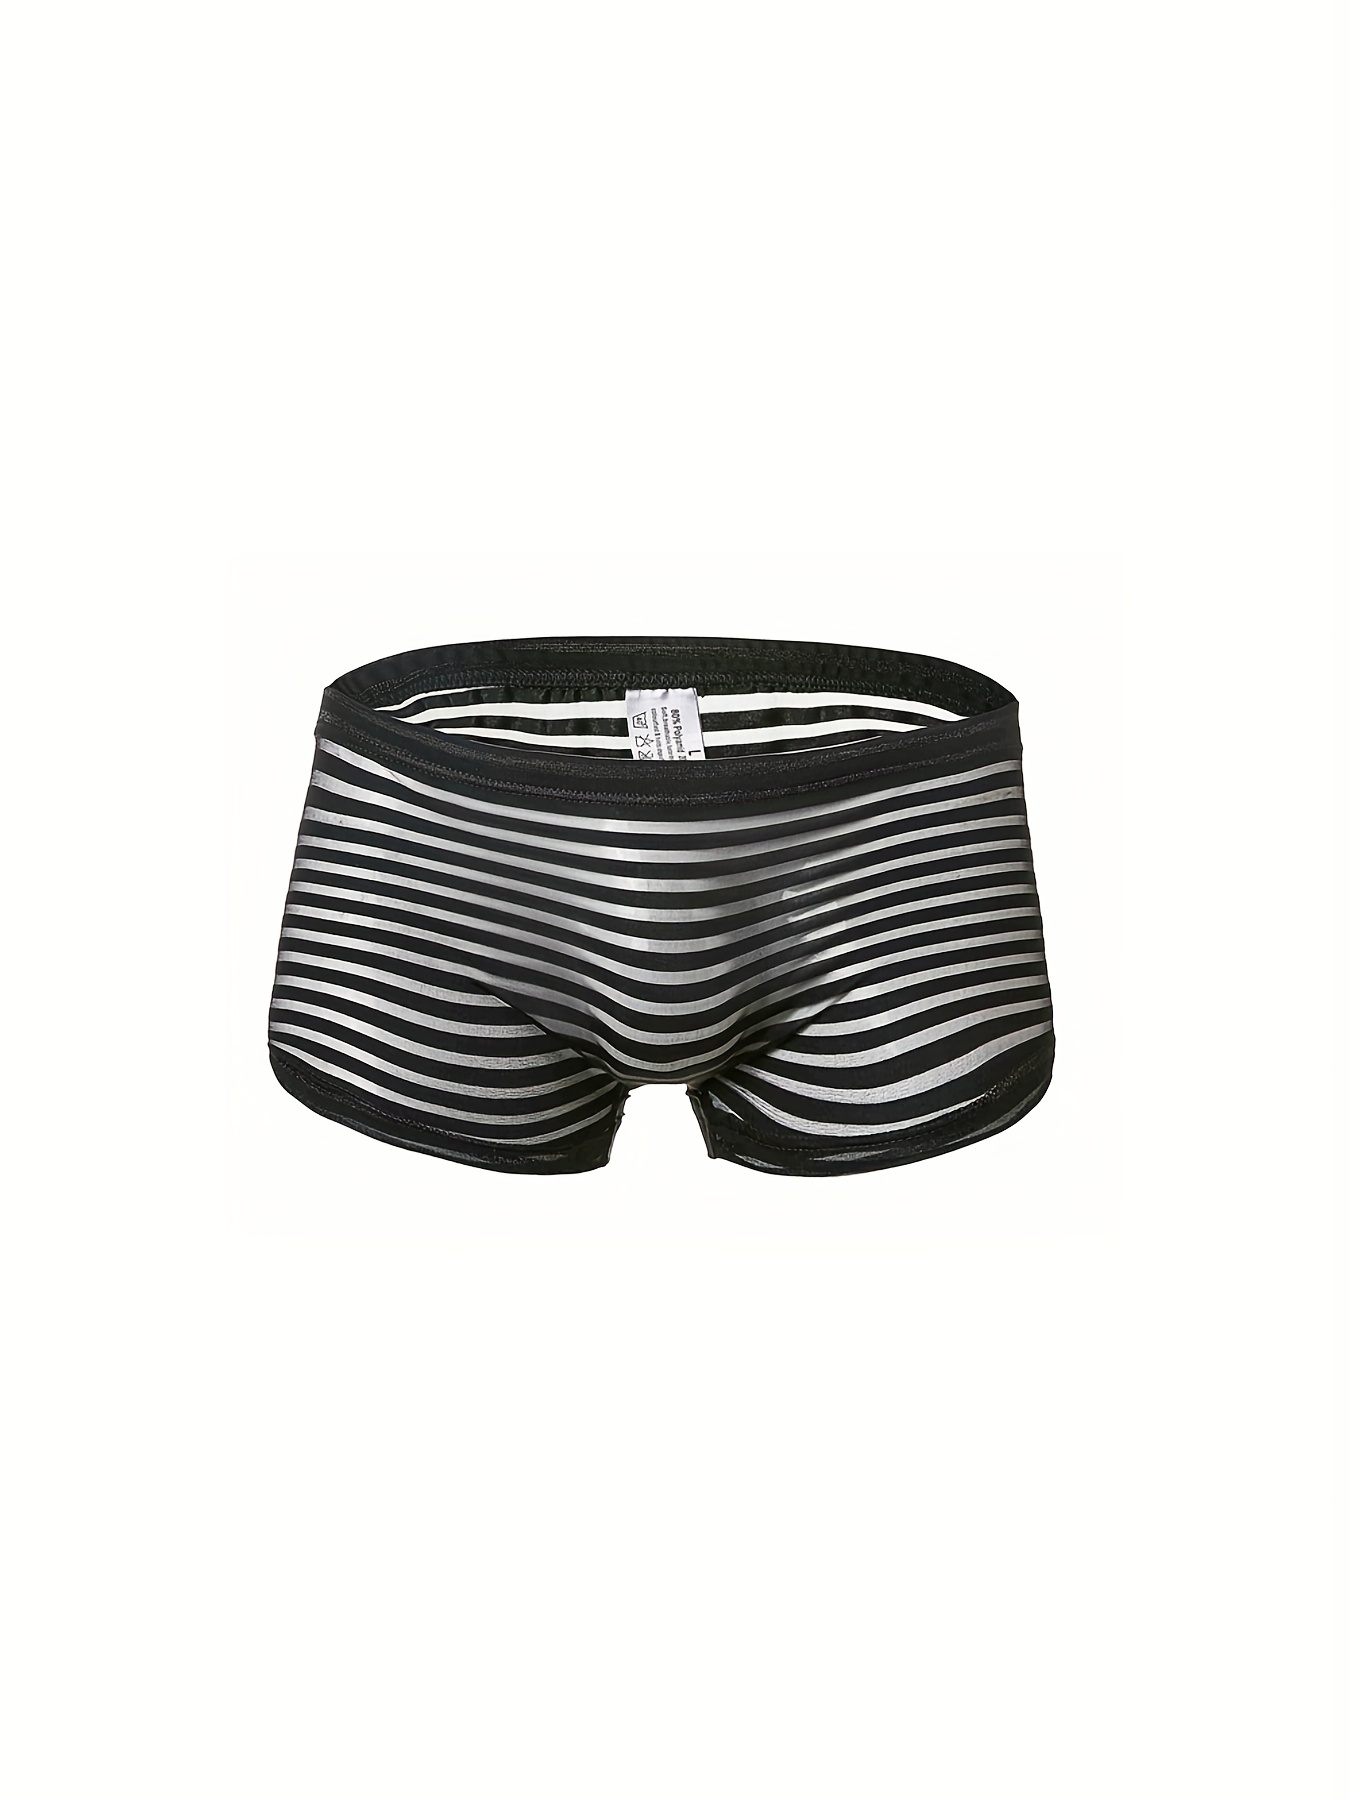 Men's Boxer Briefs Underwear Mesh See Trough Pouch Support